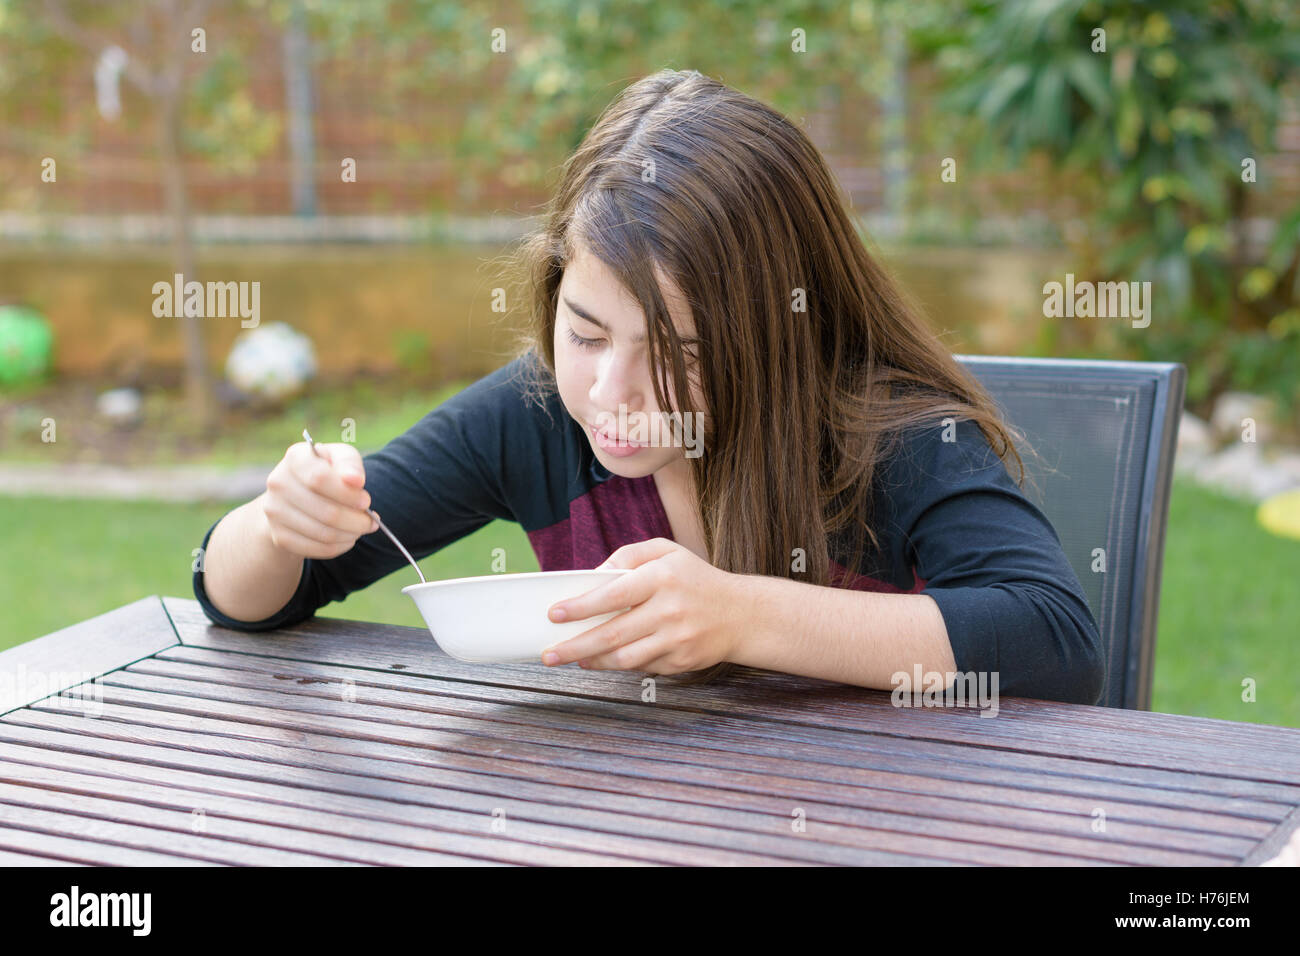 Una ragazza adolescente con rinforzi su i suoi denti godendo di calda zuppa di pollo (a.k.a. la penicillina ebraica) in una fredda giornata autunnale Foto Stock